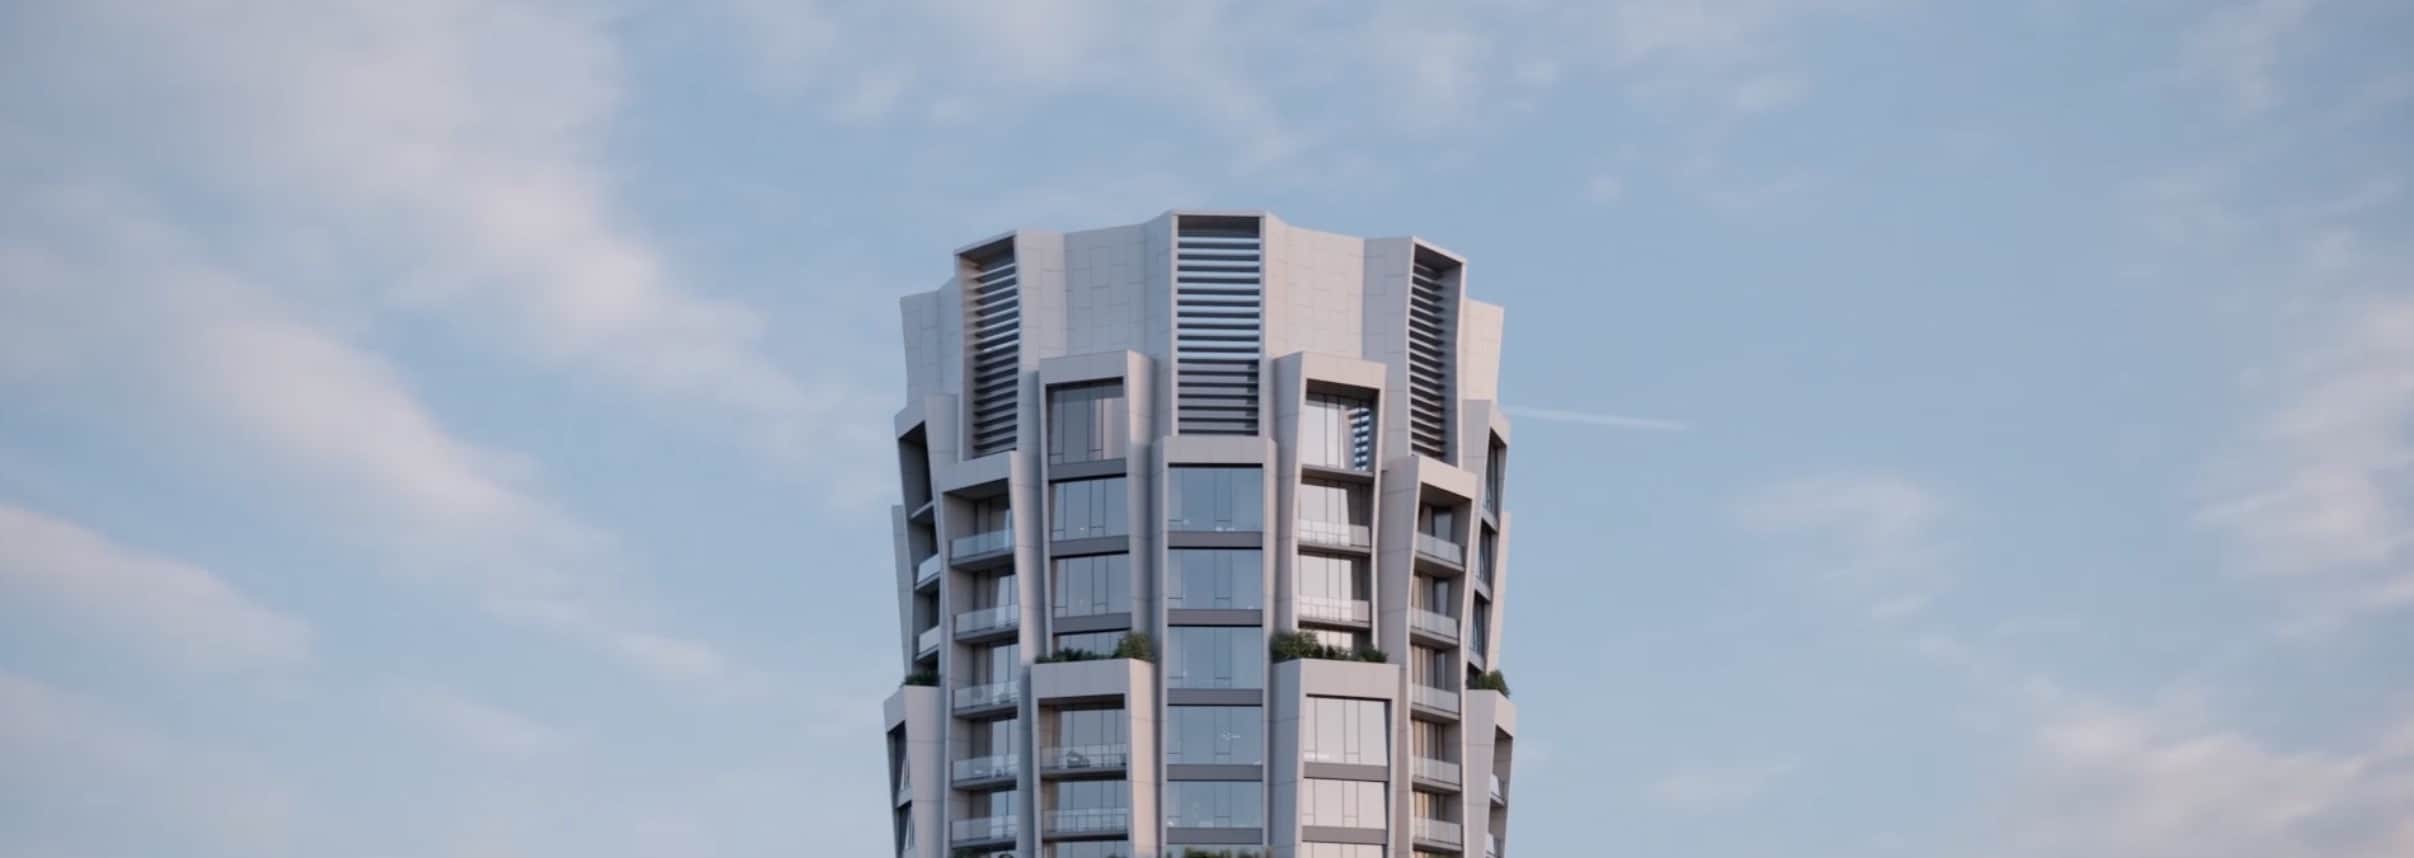 One Delisle Condos Exterior Full Building Sky View Image True Condos